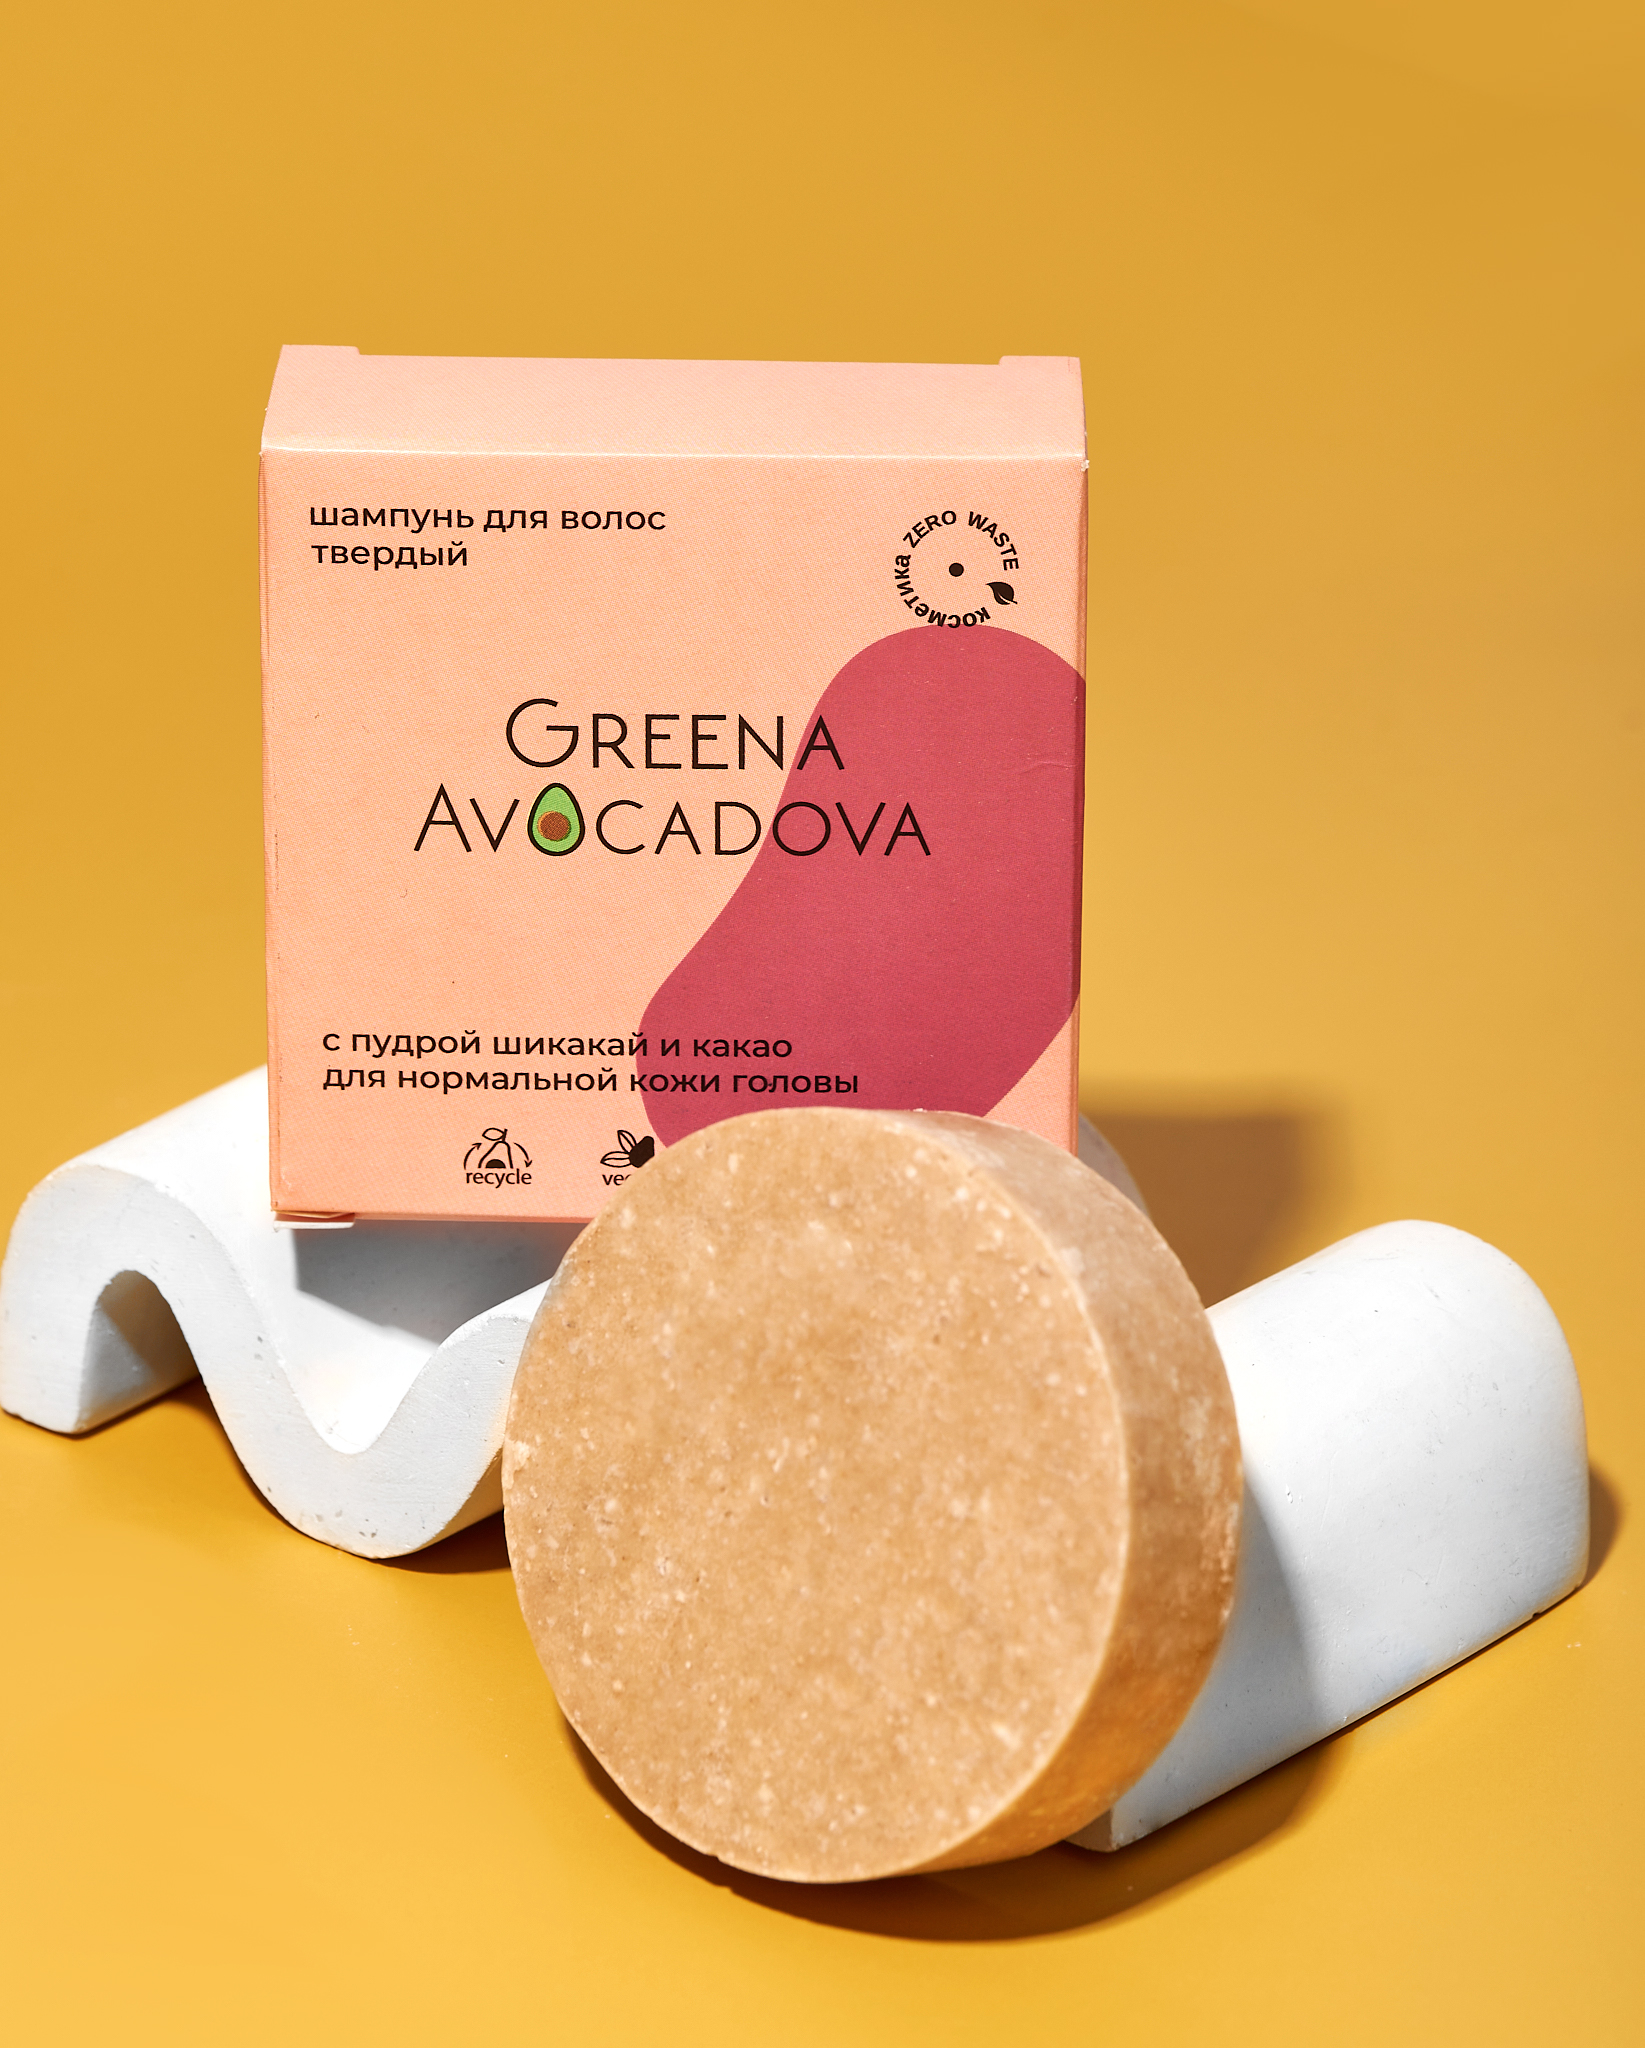 Твердый шампунь Greena Avocadova с пудрой шикакай и какао для нормальной кожи головы - фото 2